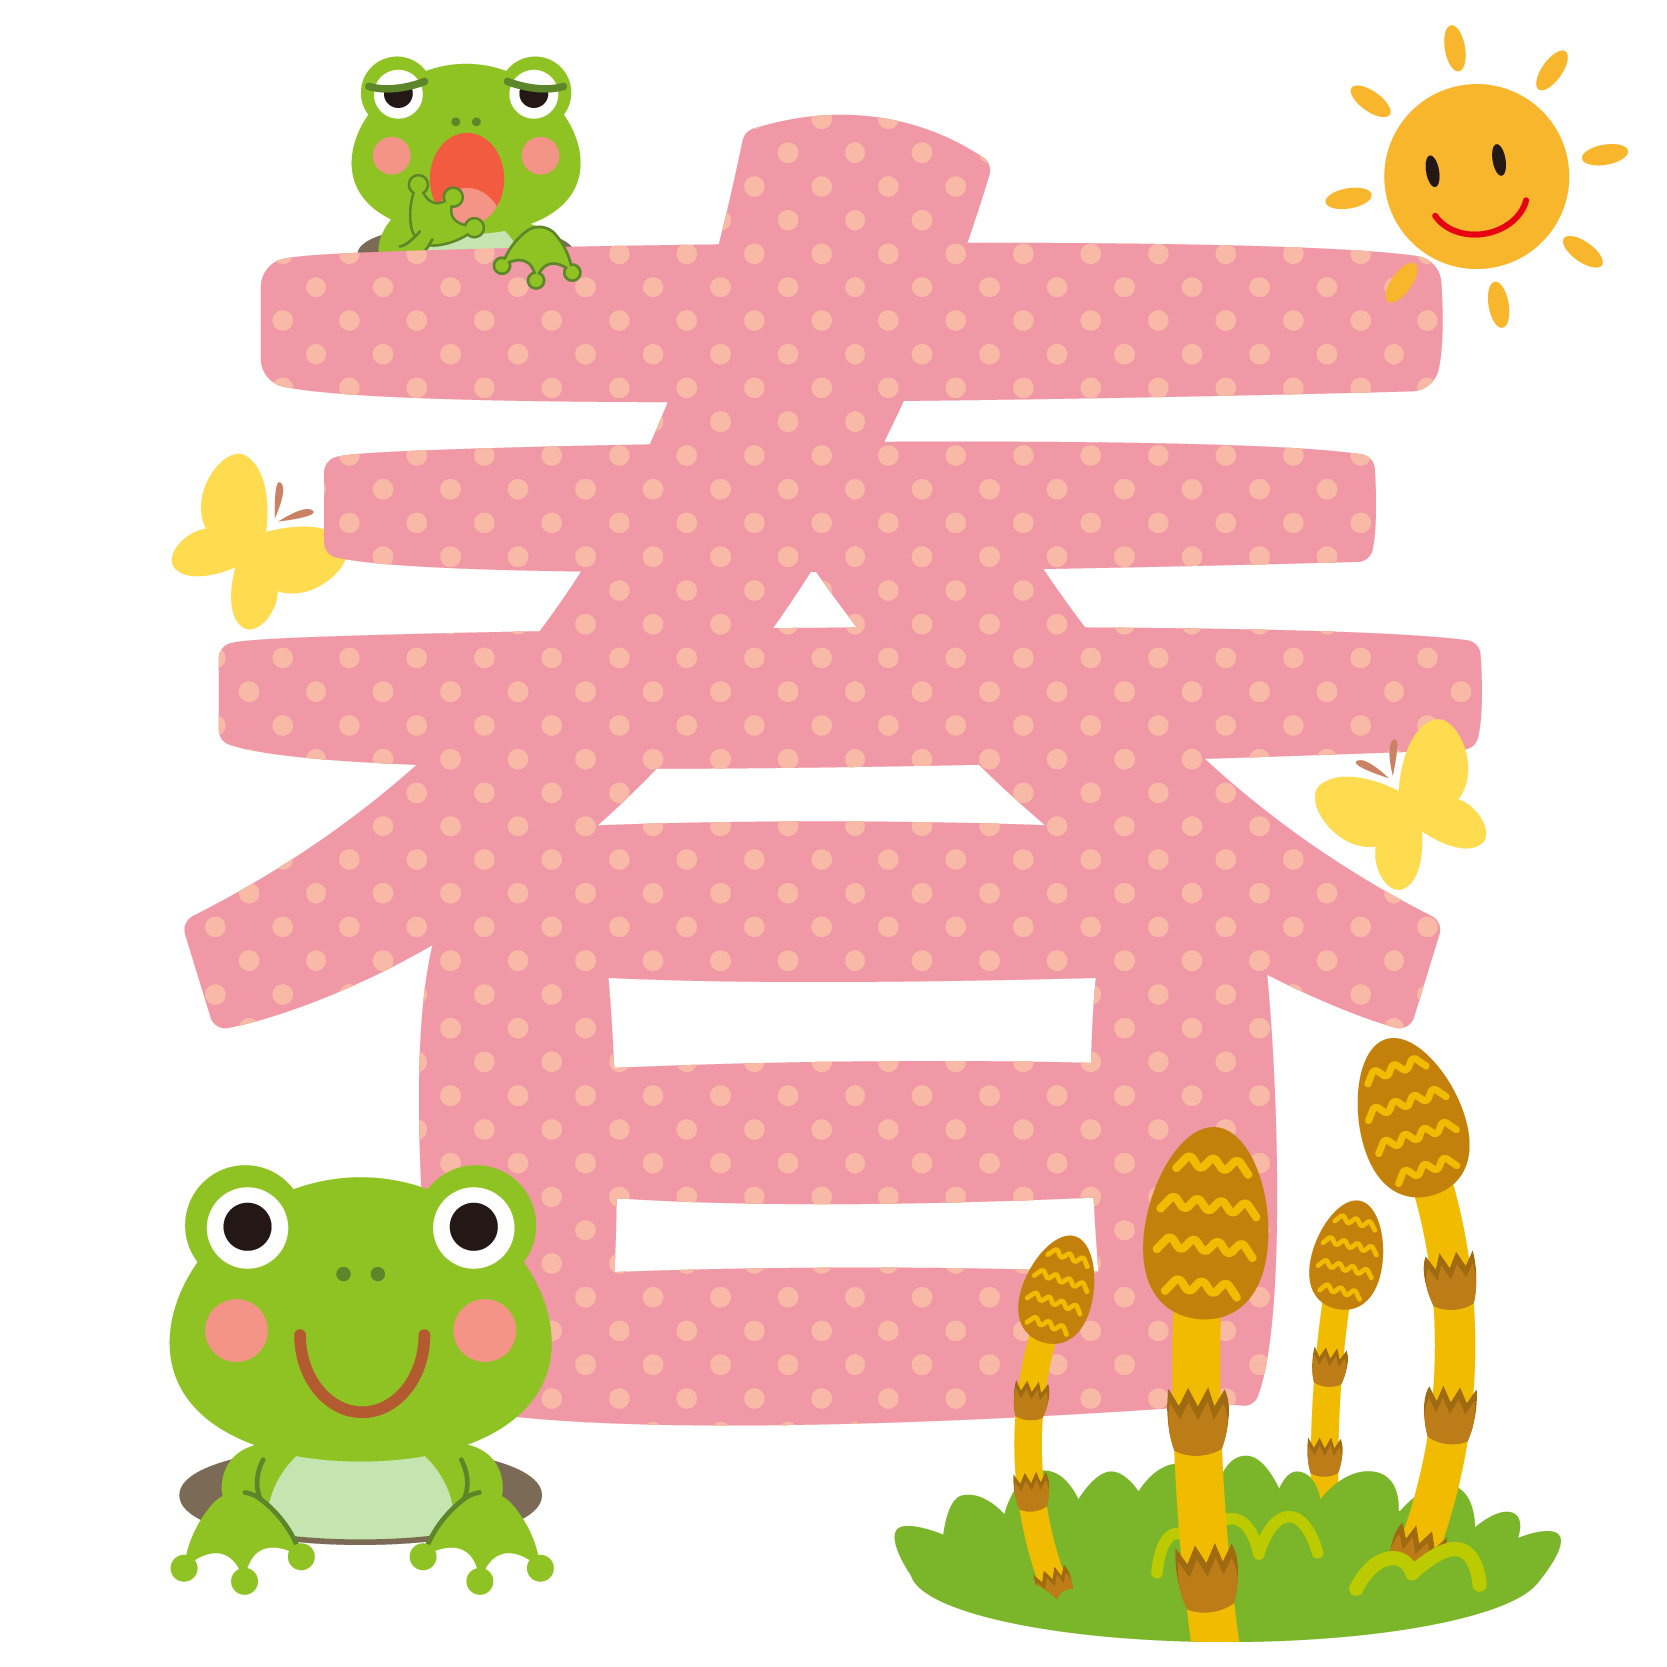 商用フリー 無料イラスト 春の文字 漢字 ちょう カエル つくし Spring Keichitsu029 商用ok フリー素材集 ナイスなイラスト